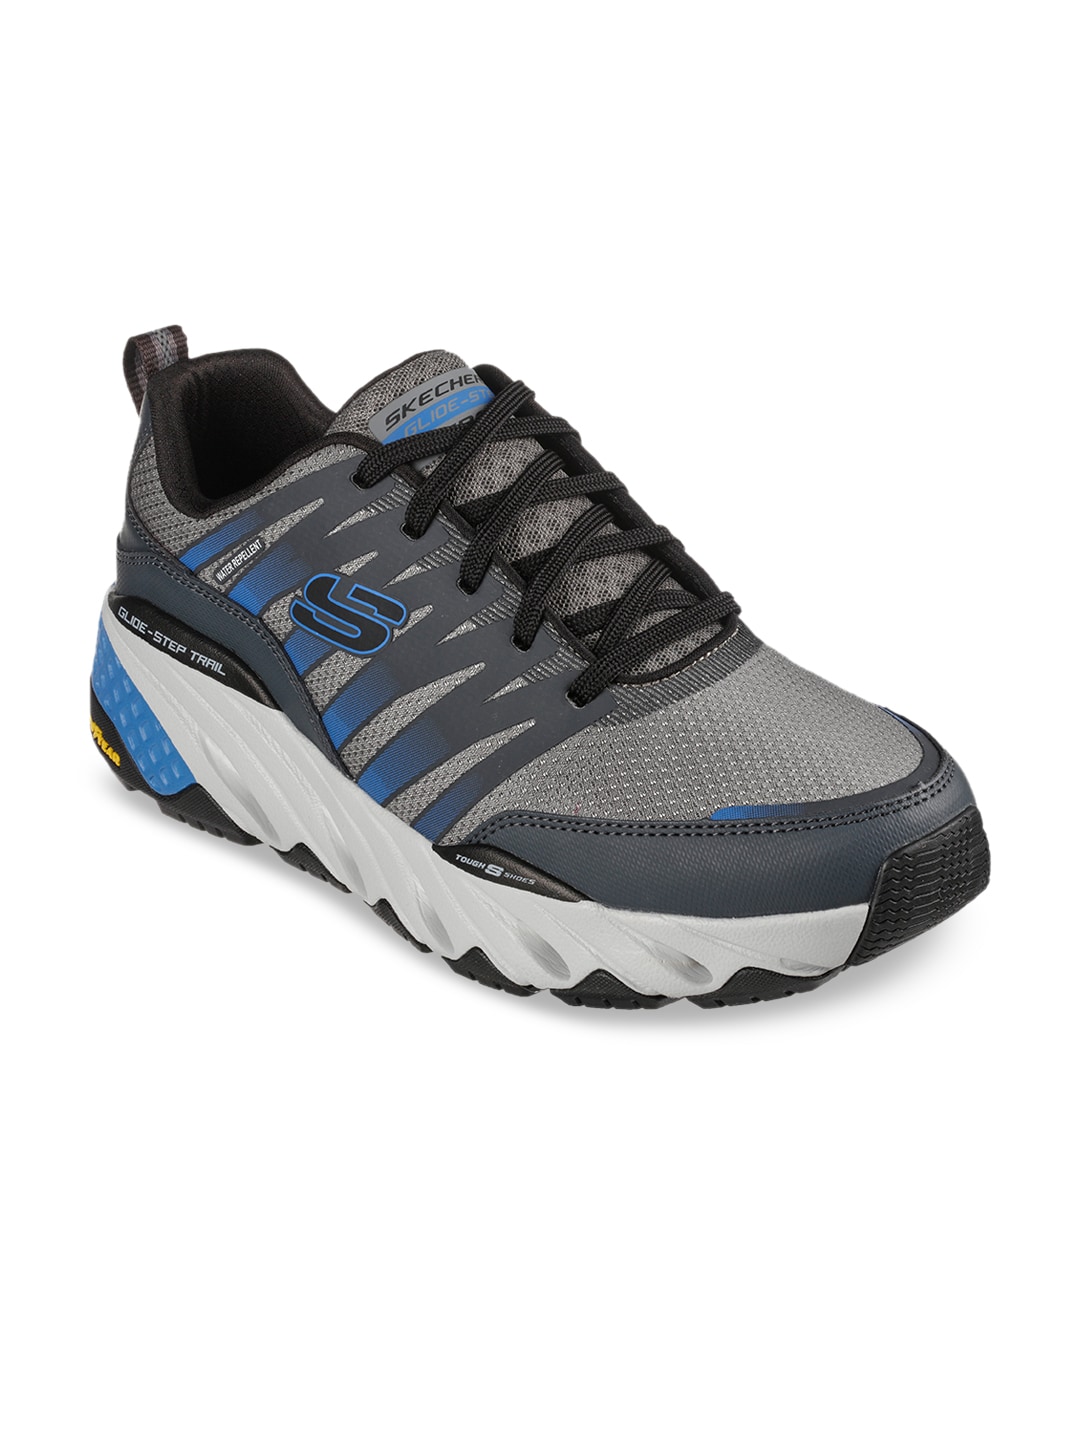 Skechers Men GLIDE-STEP TRAIL Trekking Shoes